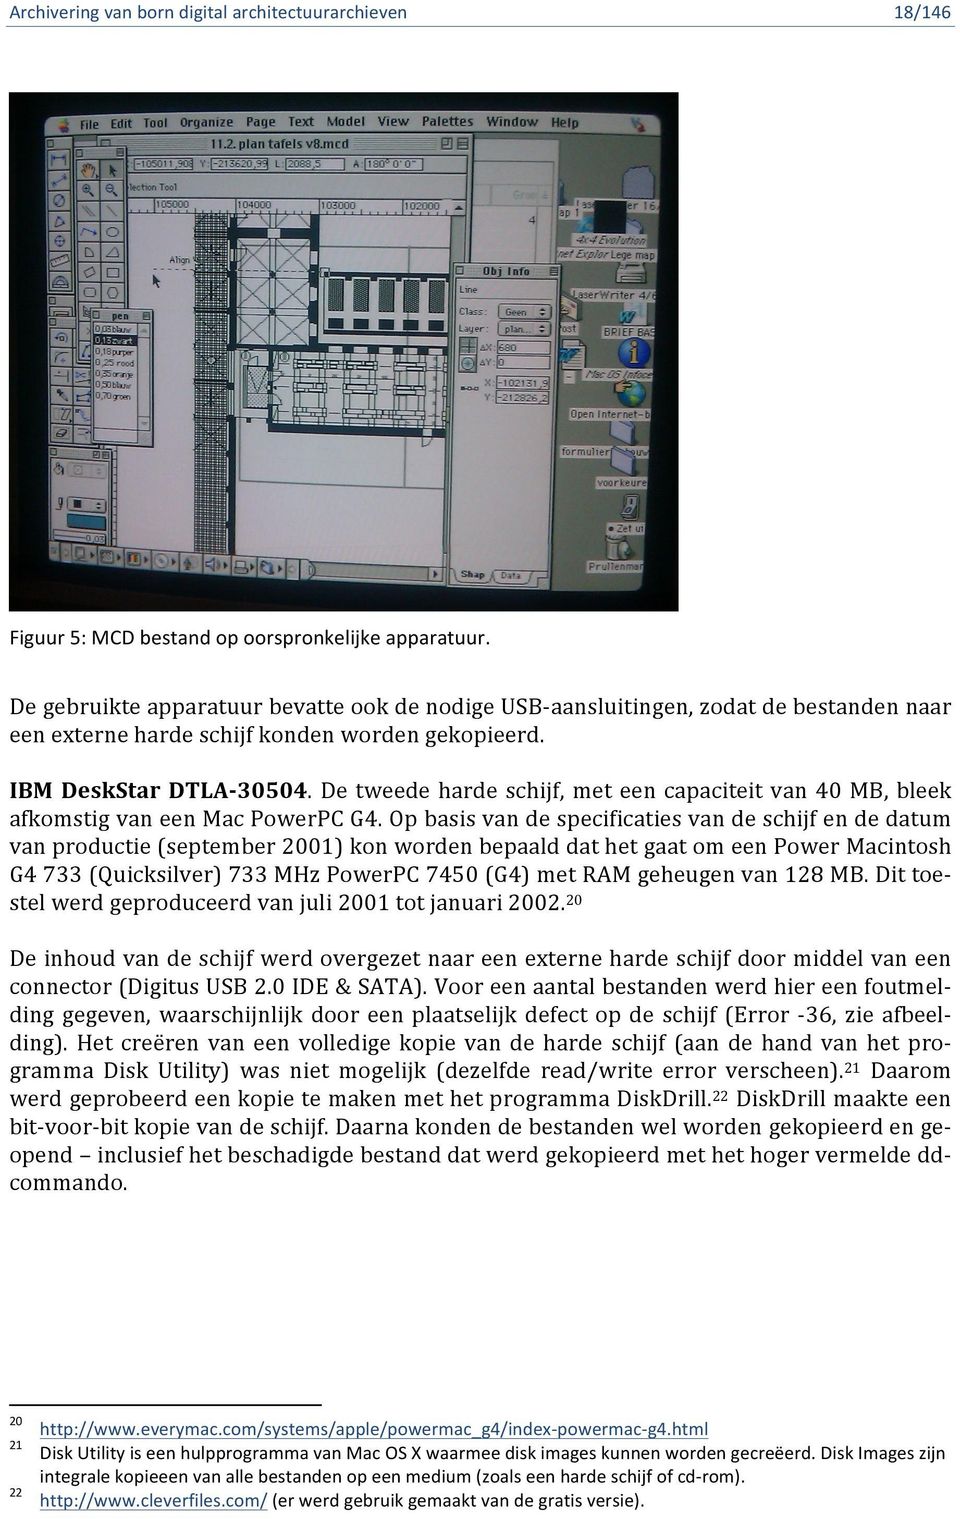 Op basis van de specificaties van de schijf en de datum van productie (september 2001) kon worden bepaald dat het gaat om een Power Macintosh G4 733 (Quicksilver) 733 MHz PowerPC 7450 (G4) met RAM